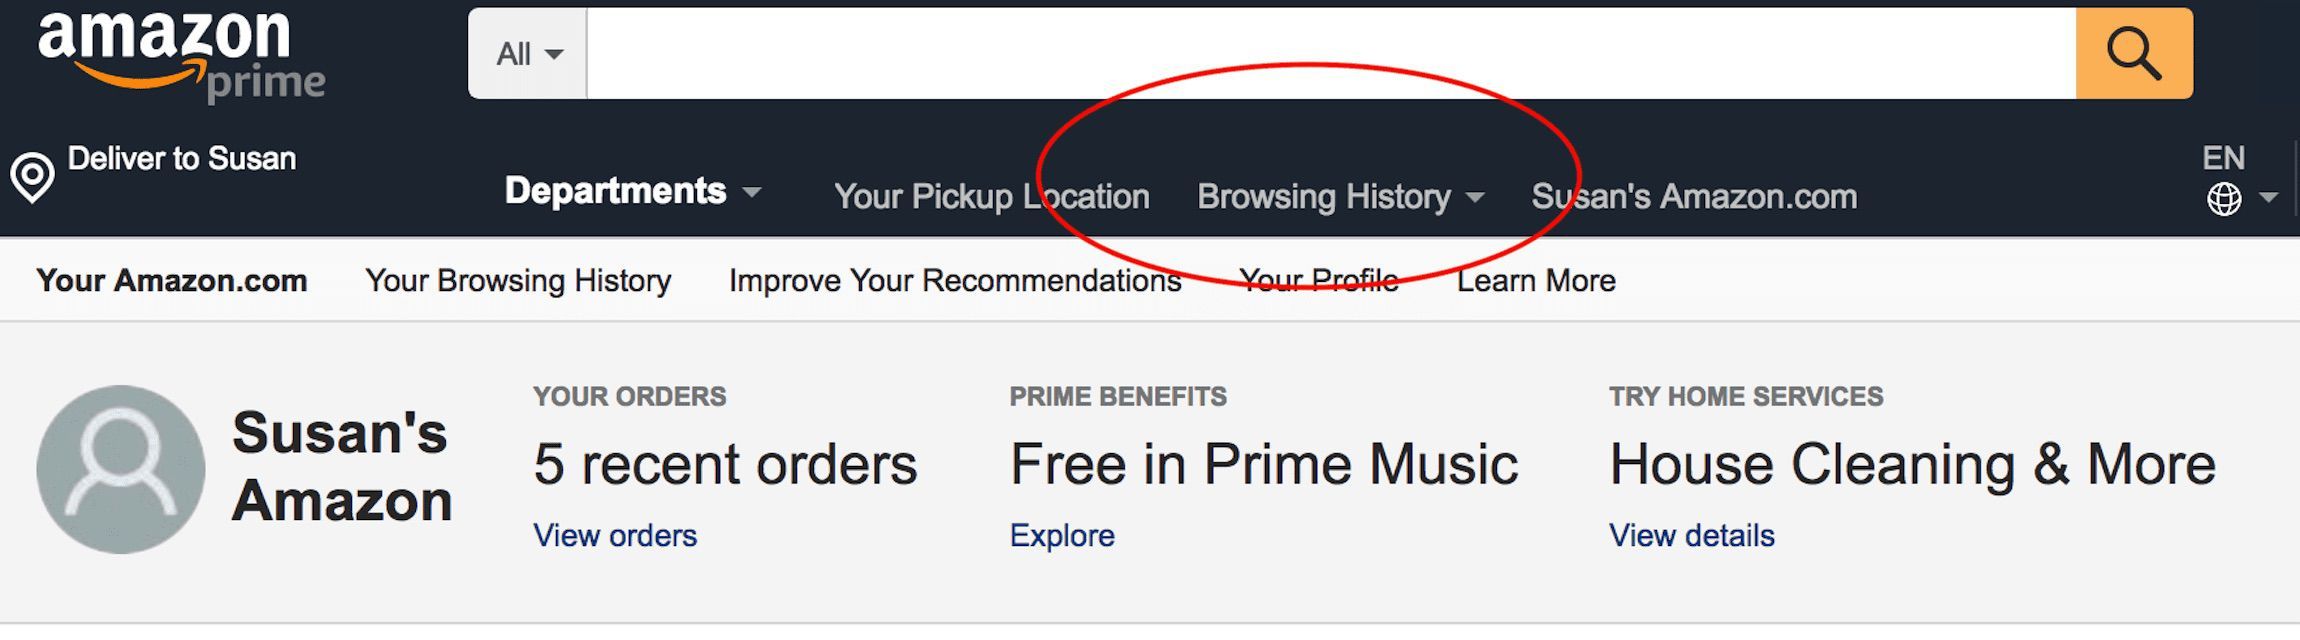 Снимок экрана домашней страницы Amazon с историей просмотра, обведенной красным